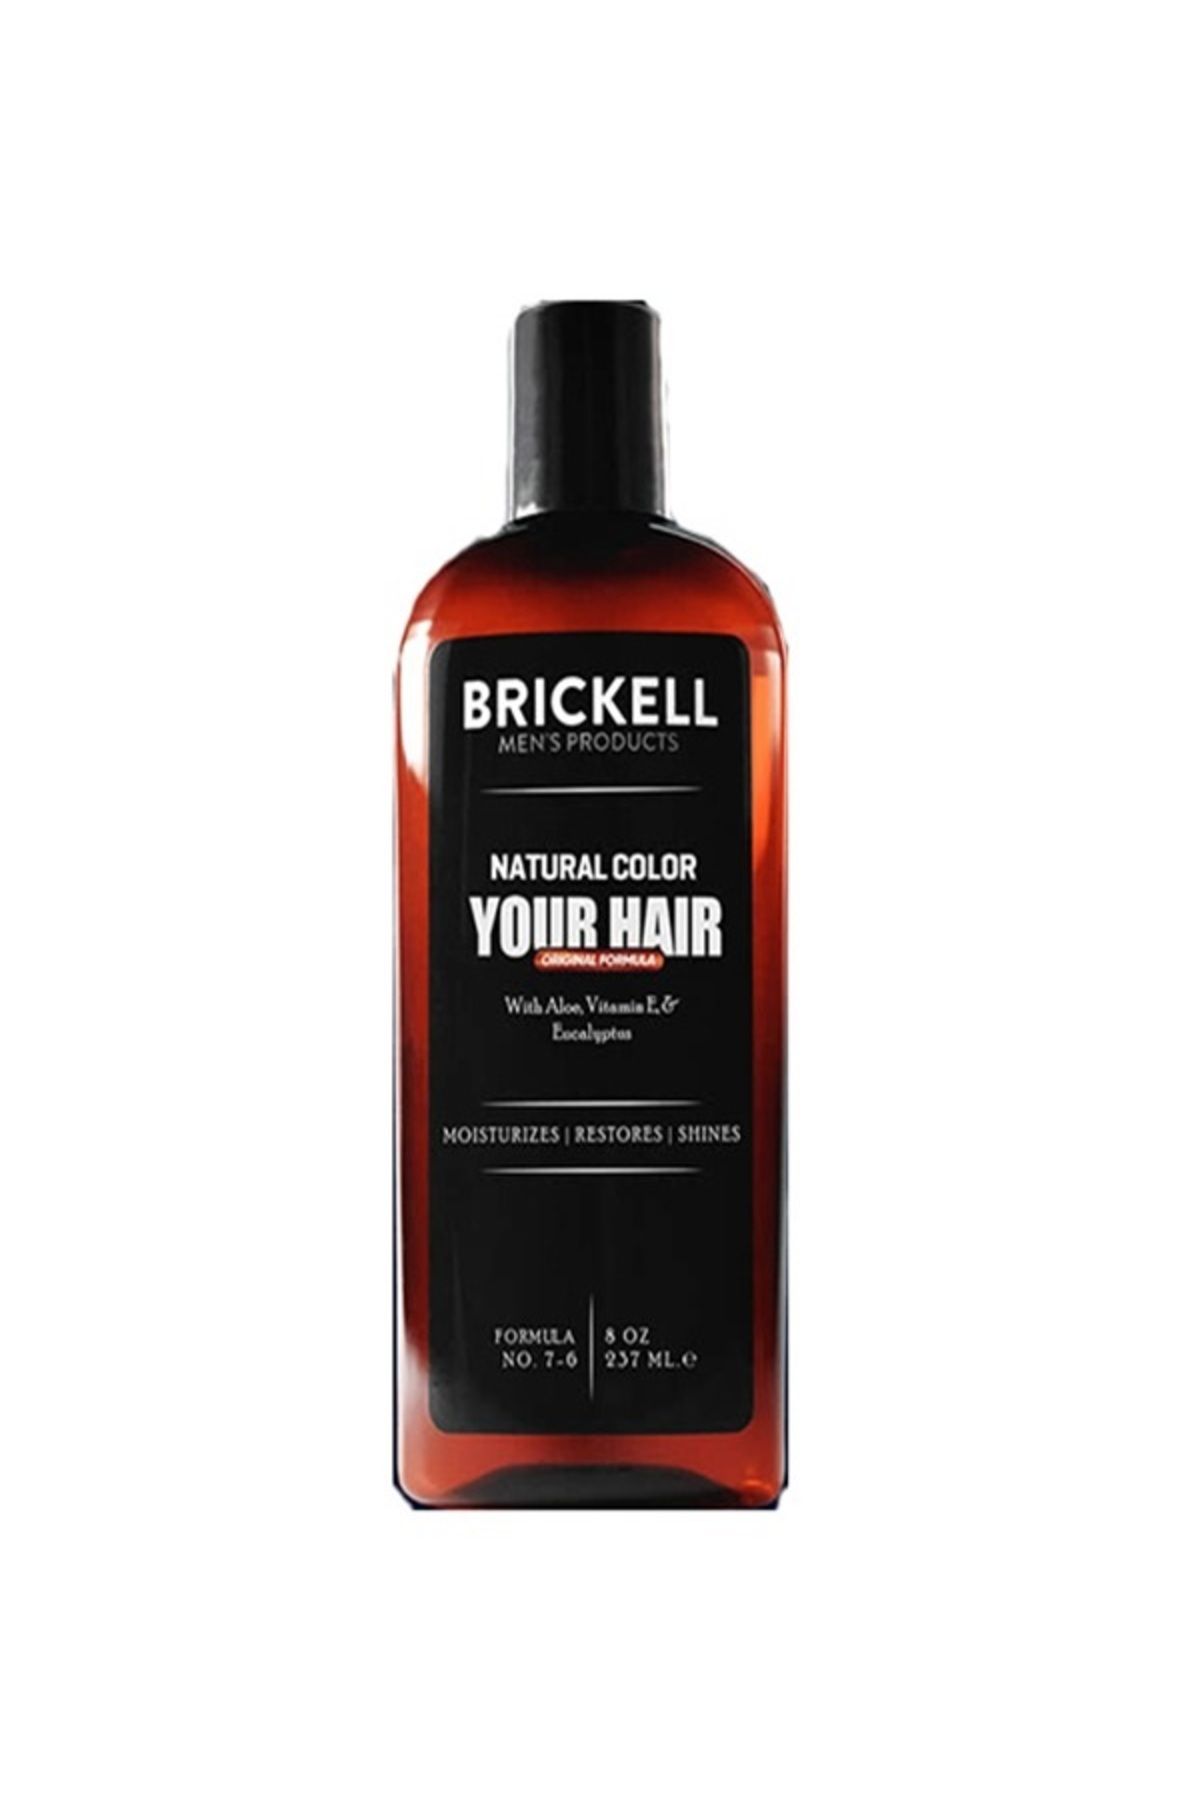 Eurorganiq Brickell Erkeklere Özel Saç, Sakal Beyazlık Giderci ve Renklendirci Şampuan 237 ml For Men